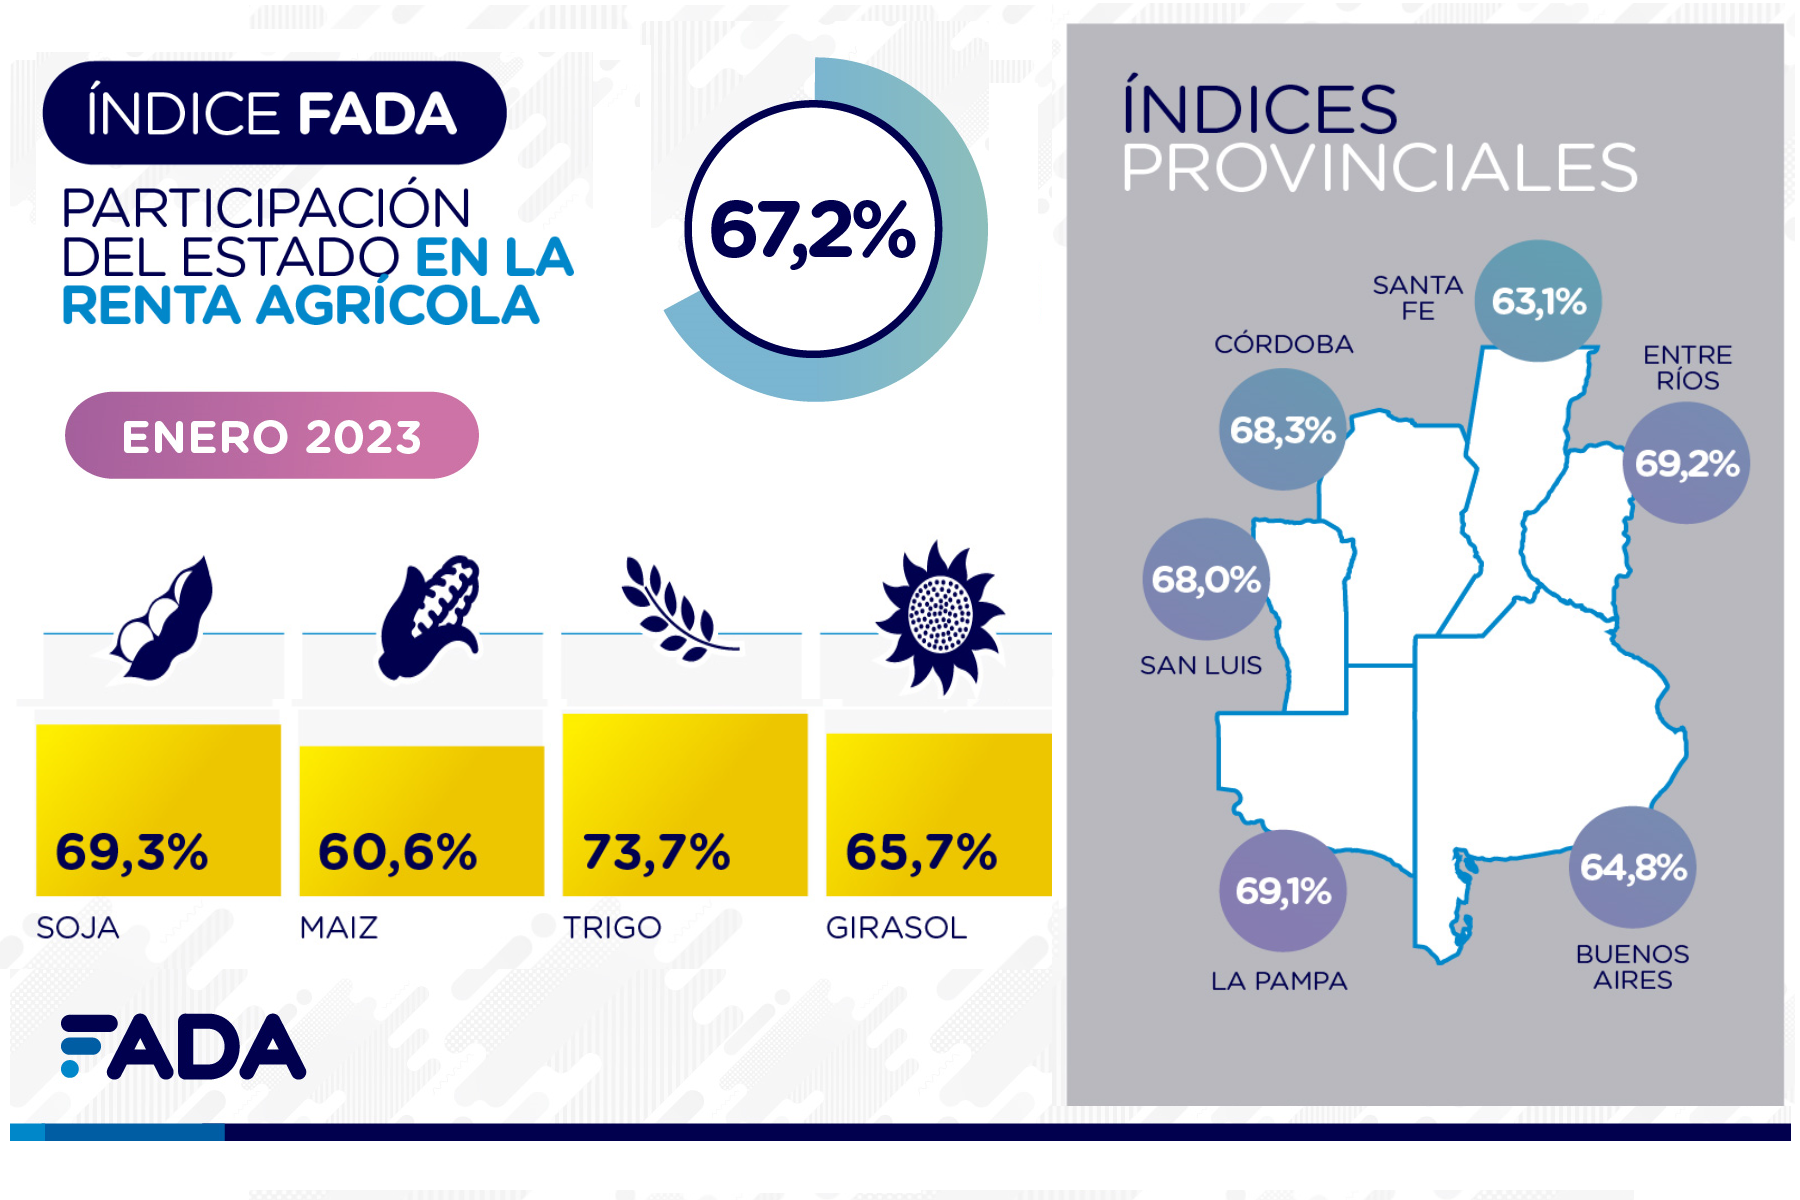 La Pampa entre las provincias con mayor índice FADA